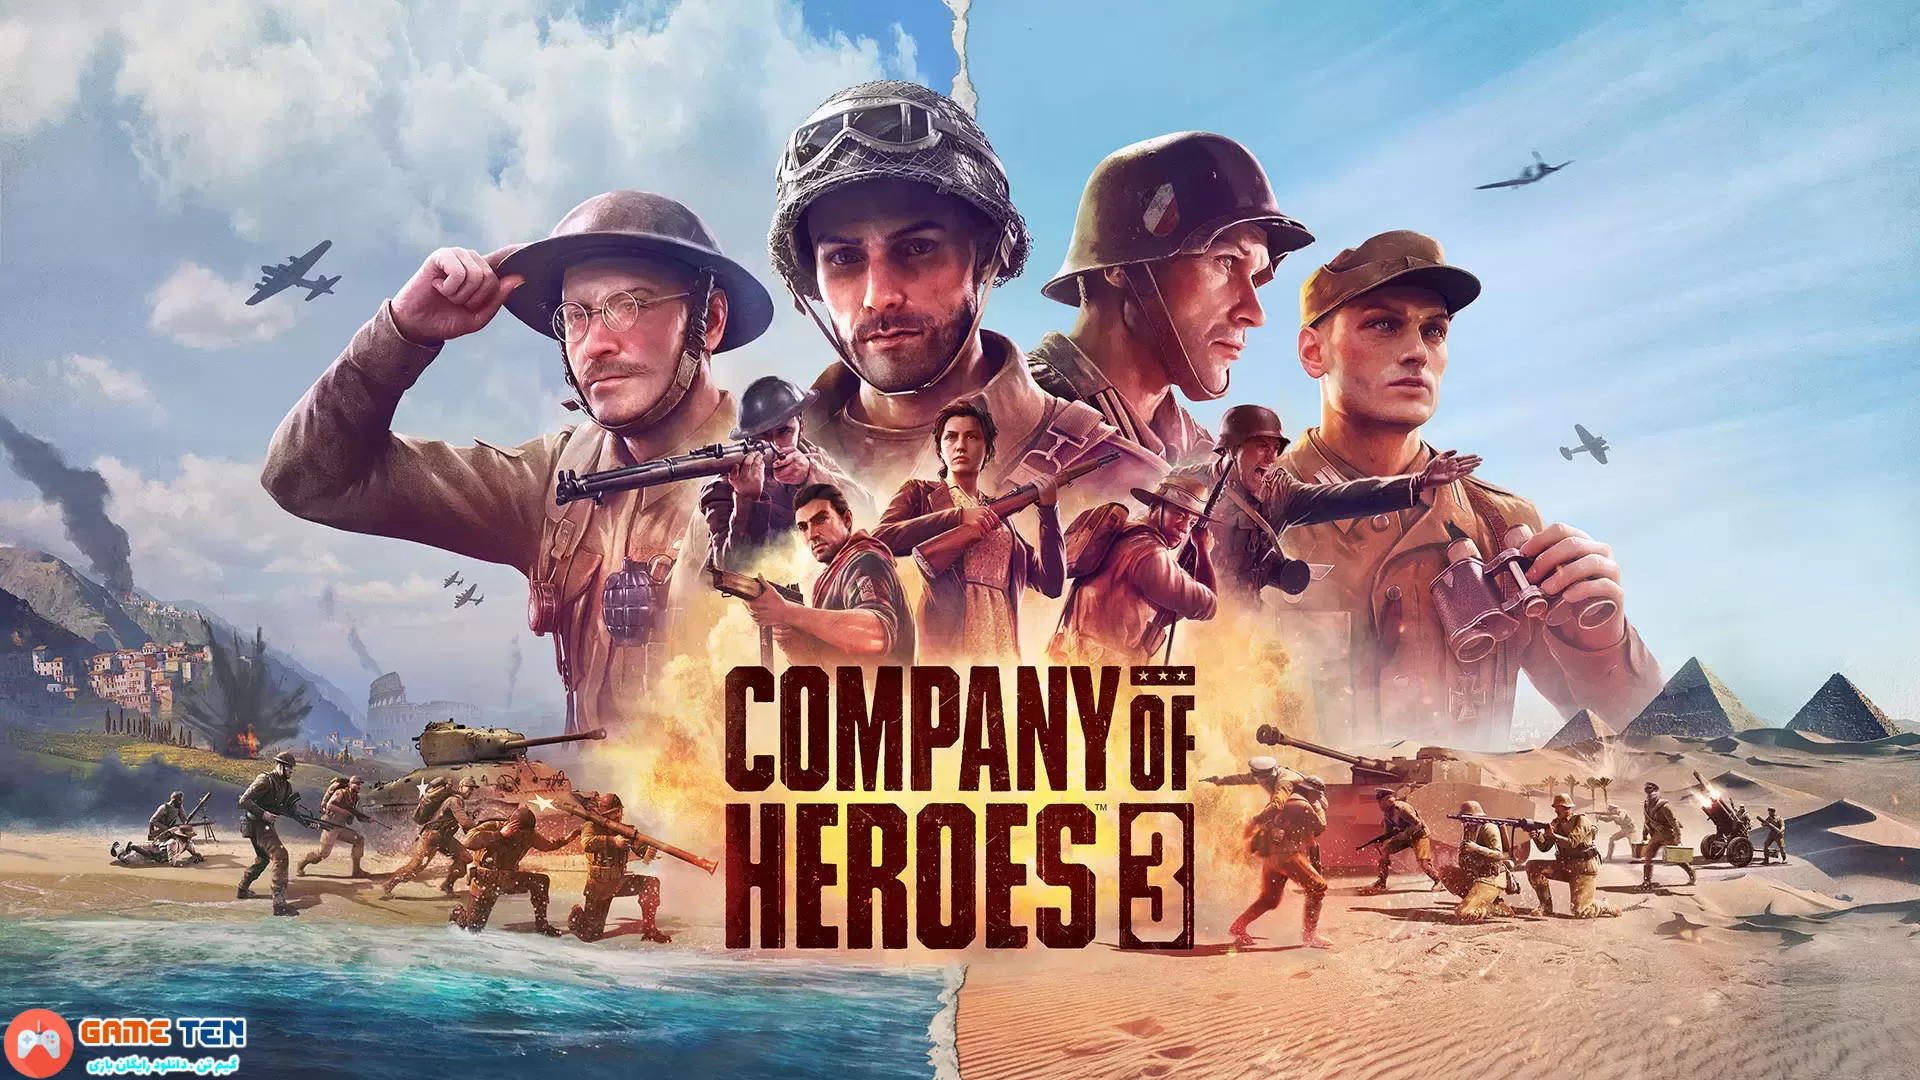 دانلود بازی Company of Heroes 3 برای کامپیوتر